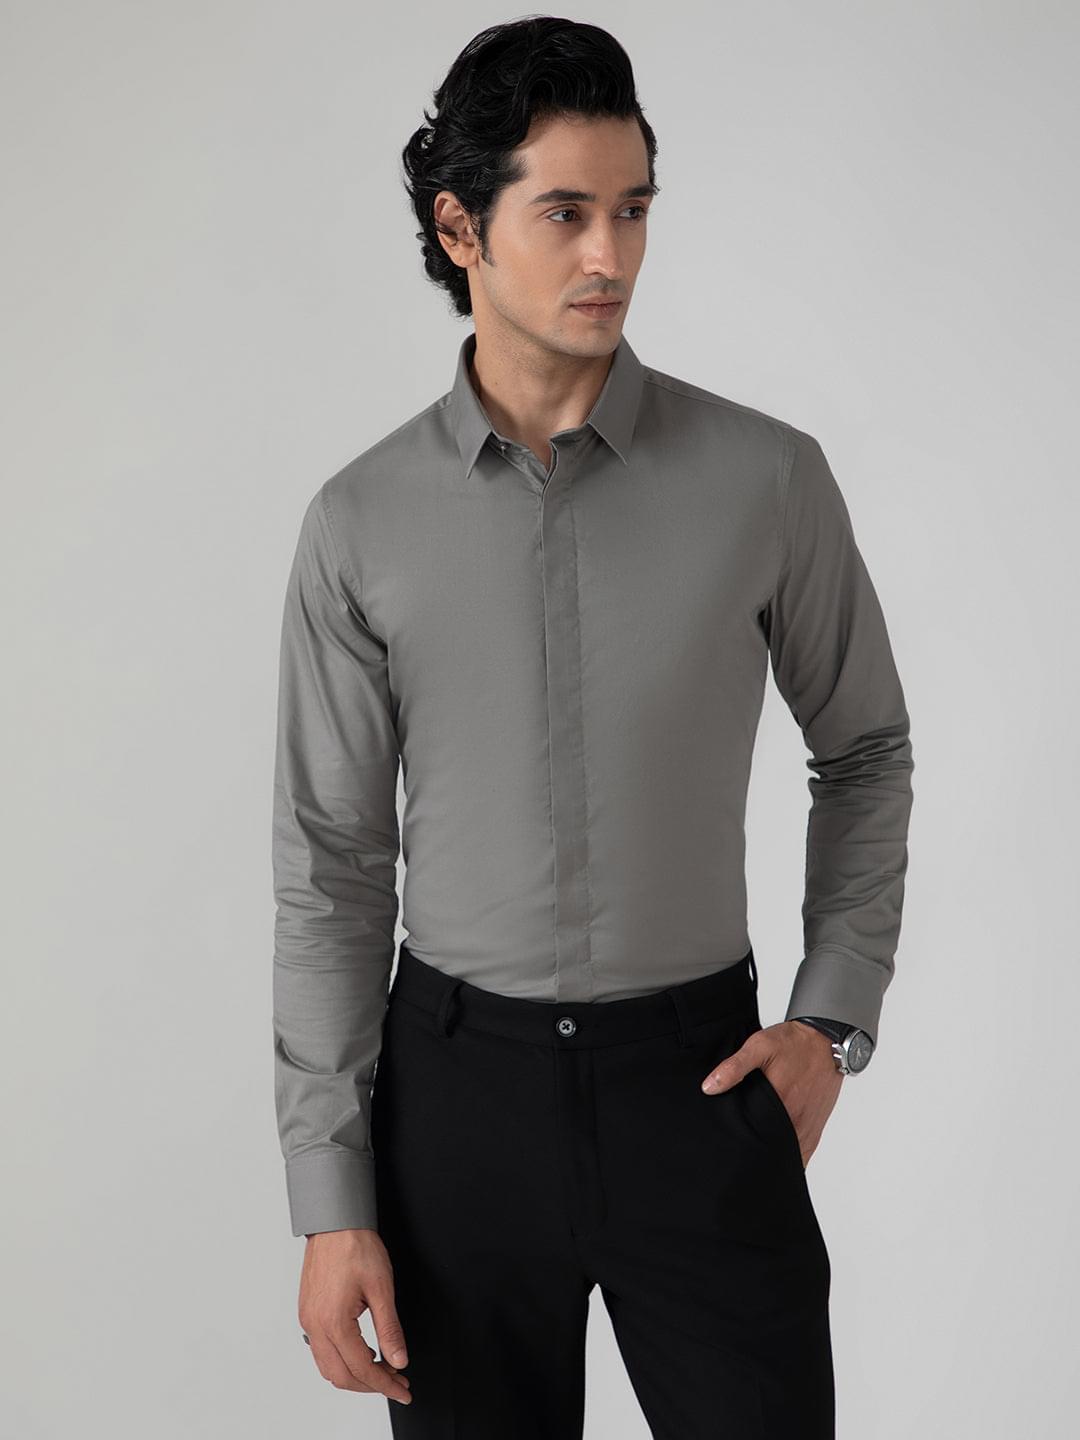 2 Way Stretch Satin Shirt in Ash Grey- Slim Fit